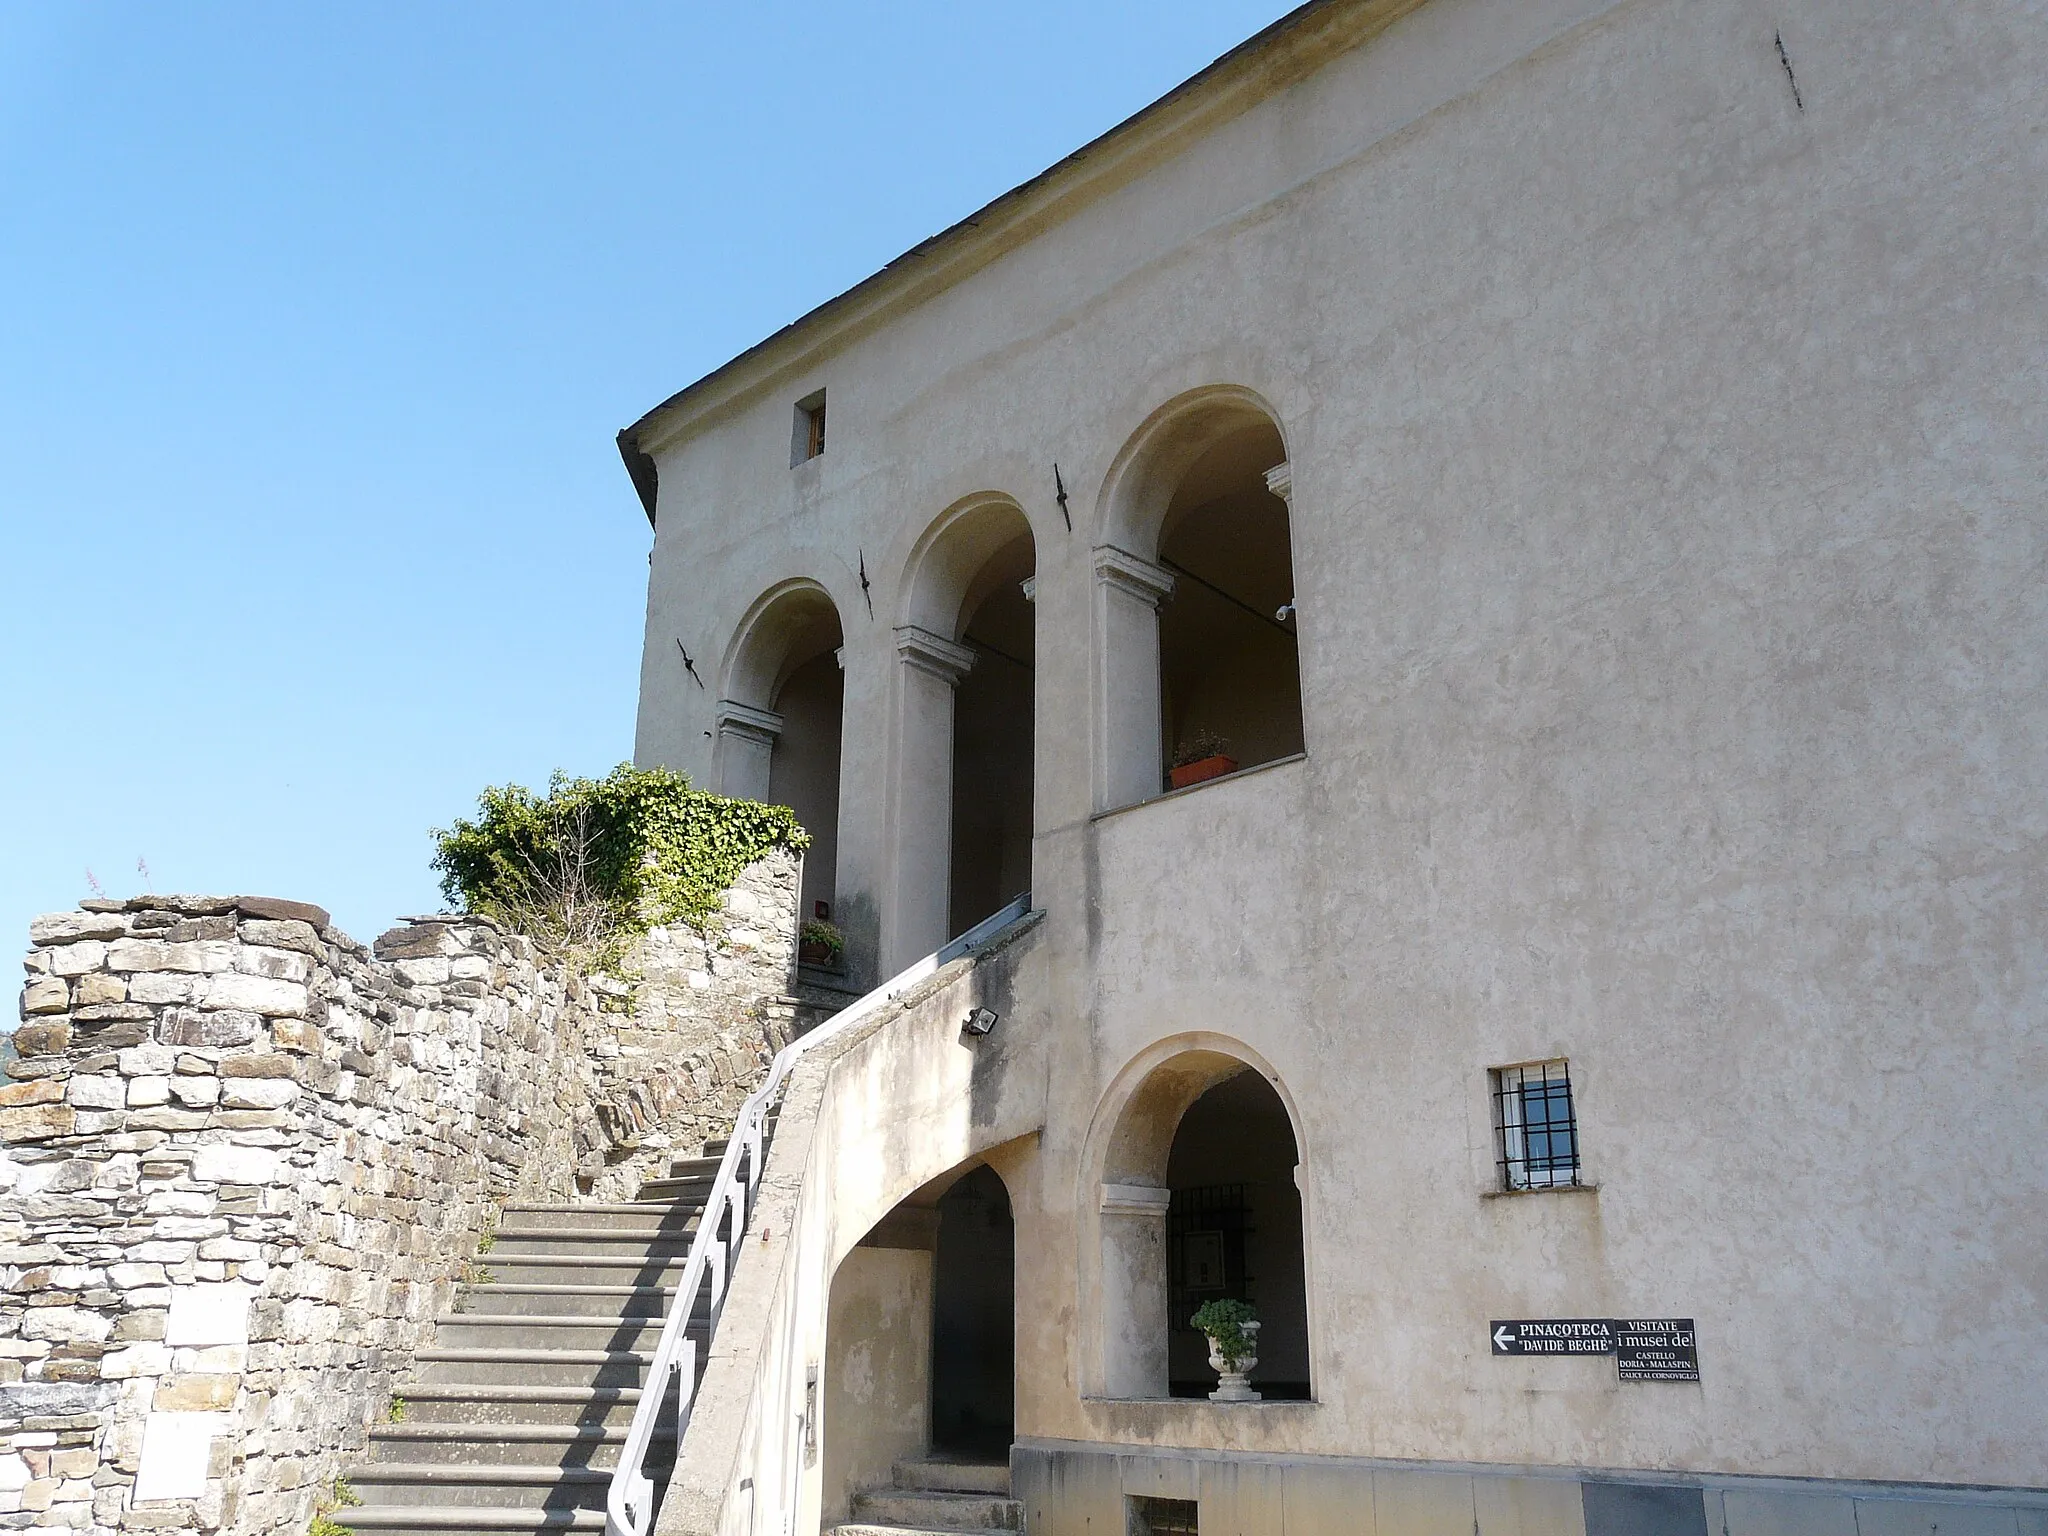 Photo showing: Castello Doria Malaspina, Calice al Cornoviglio, Liguria, Italia